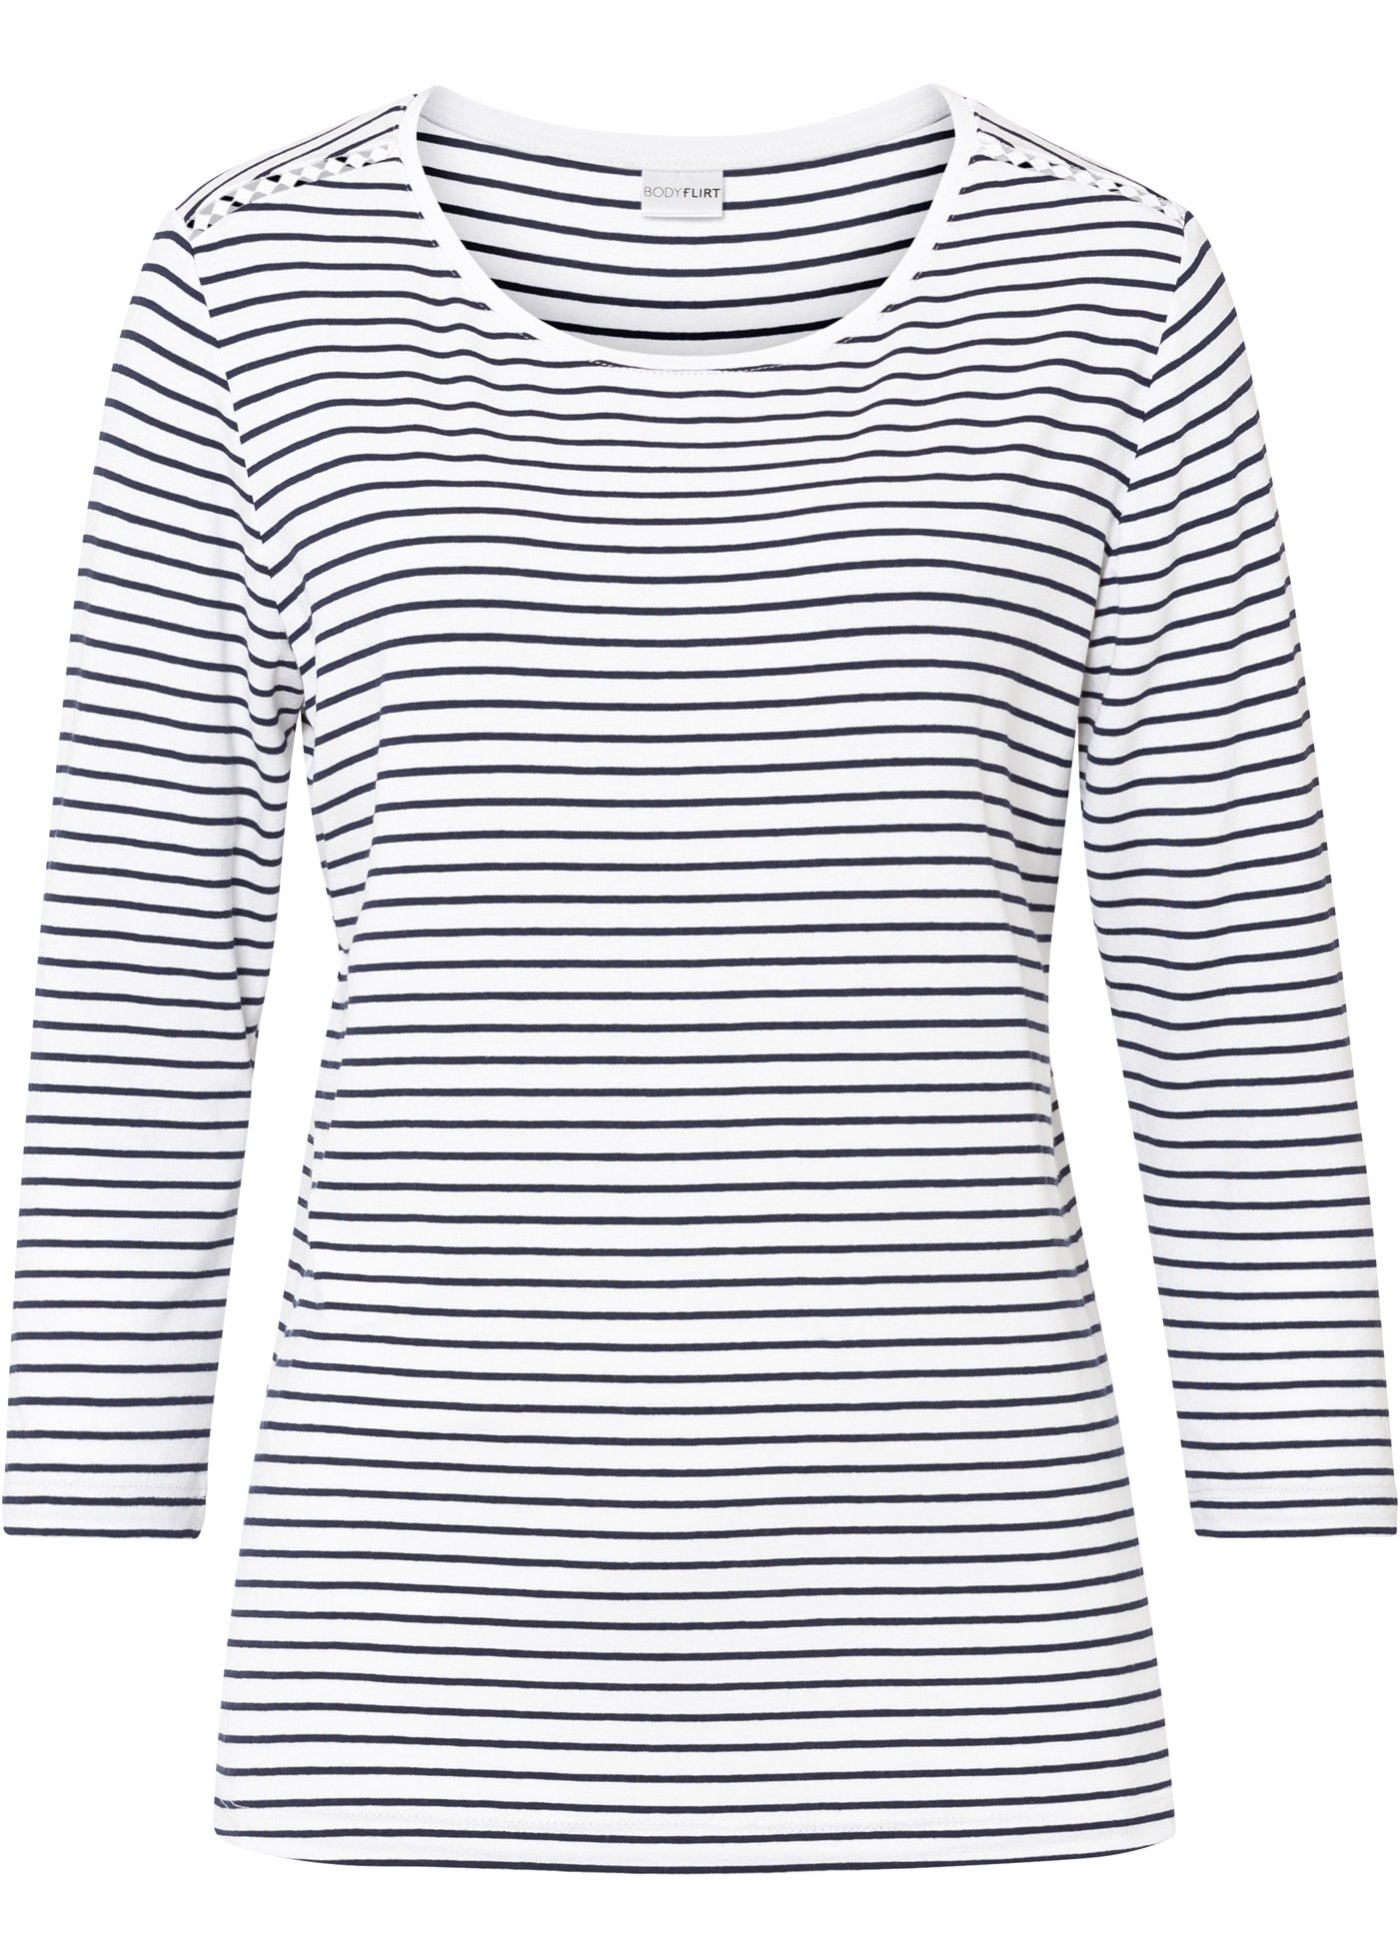 Modisches Shirt mit Streifen und verspieltem Spitzeneinsatz an der Schulter. (96956681) in dunkelblau/weiß gestreift